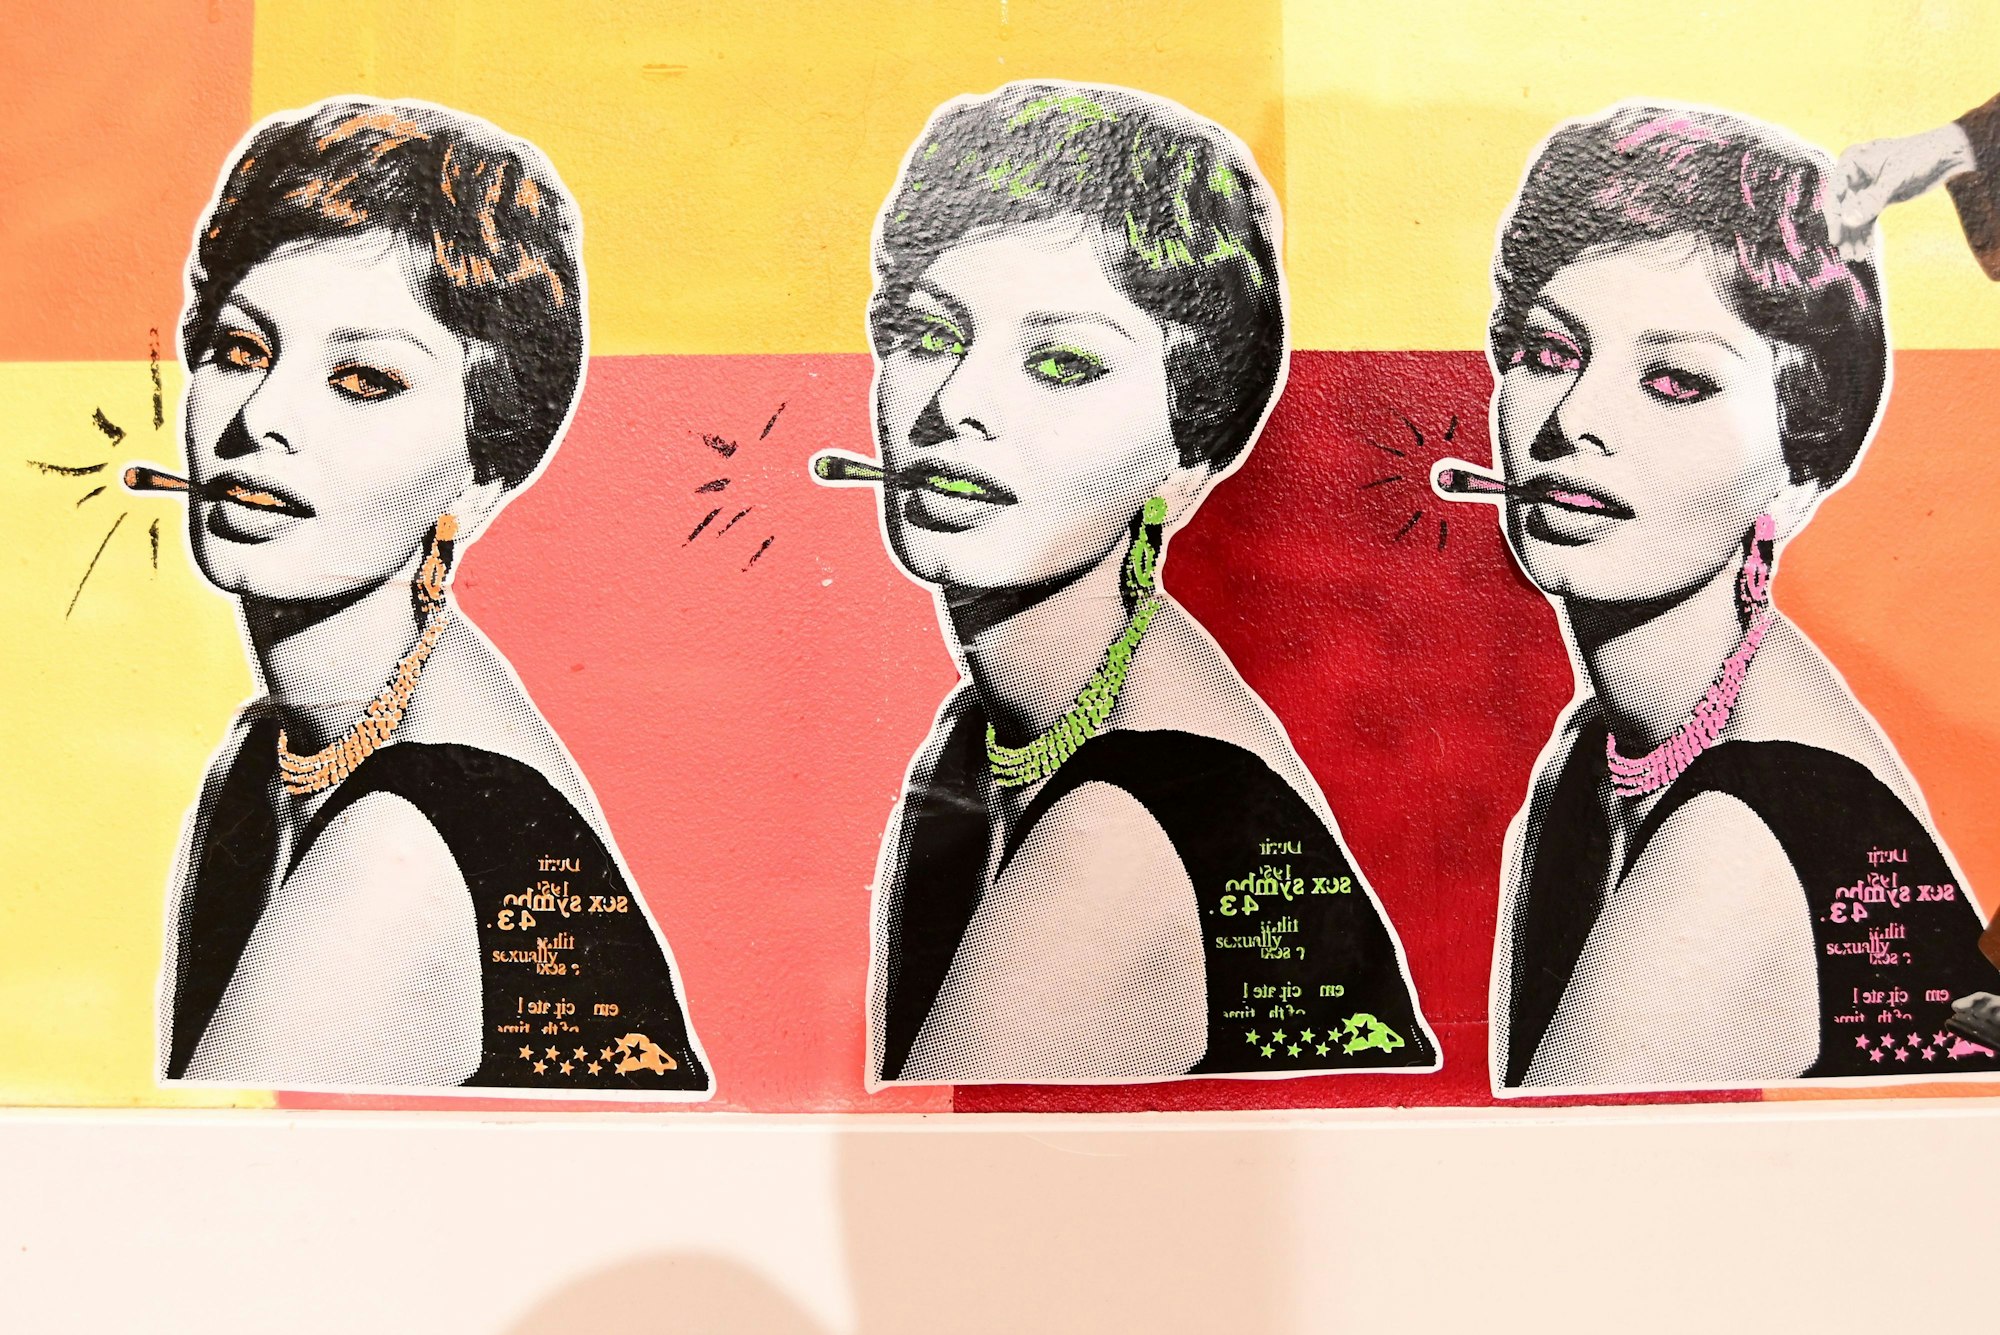 Das Werk zeigt die Schauspielerin Sophia Loren in Pop-Art-Manier. Das Werk ist von Tom Weecks alias Cuts and Pieces